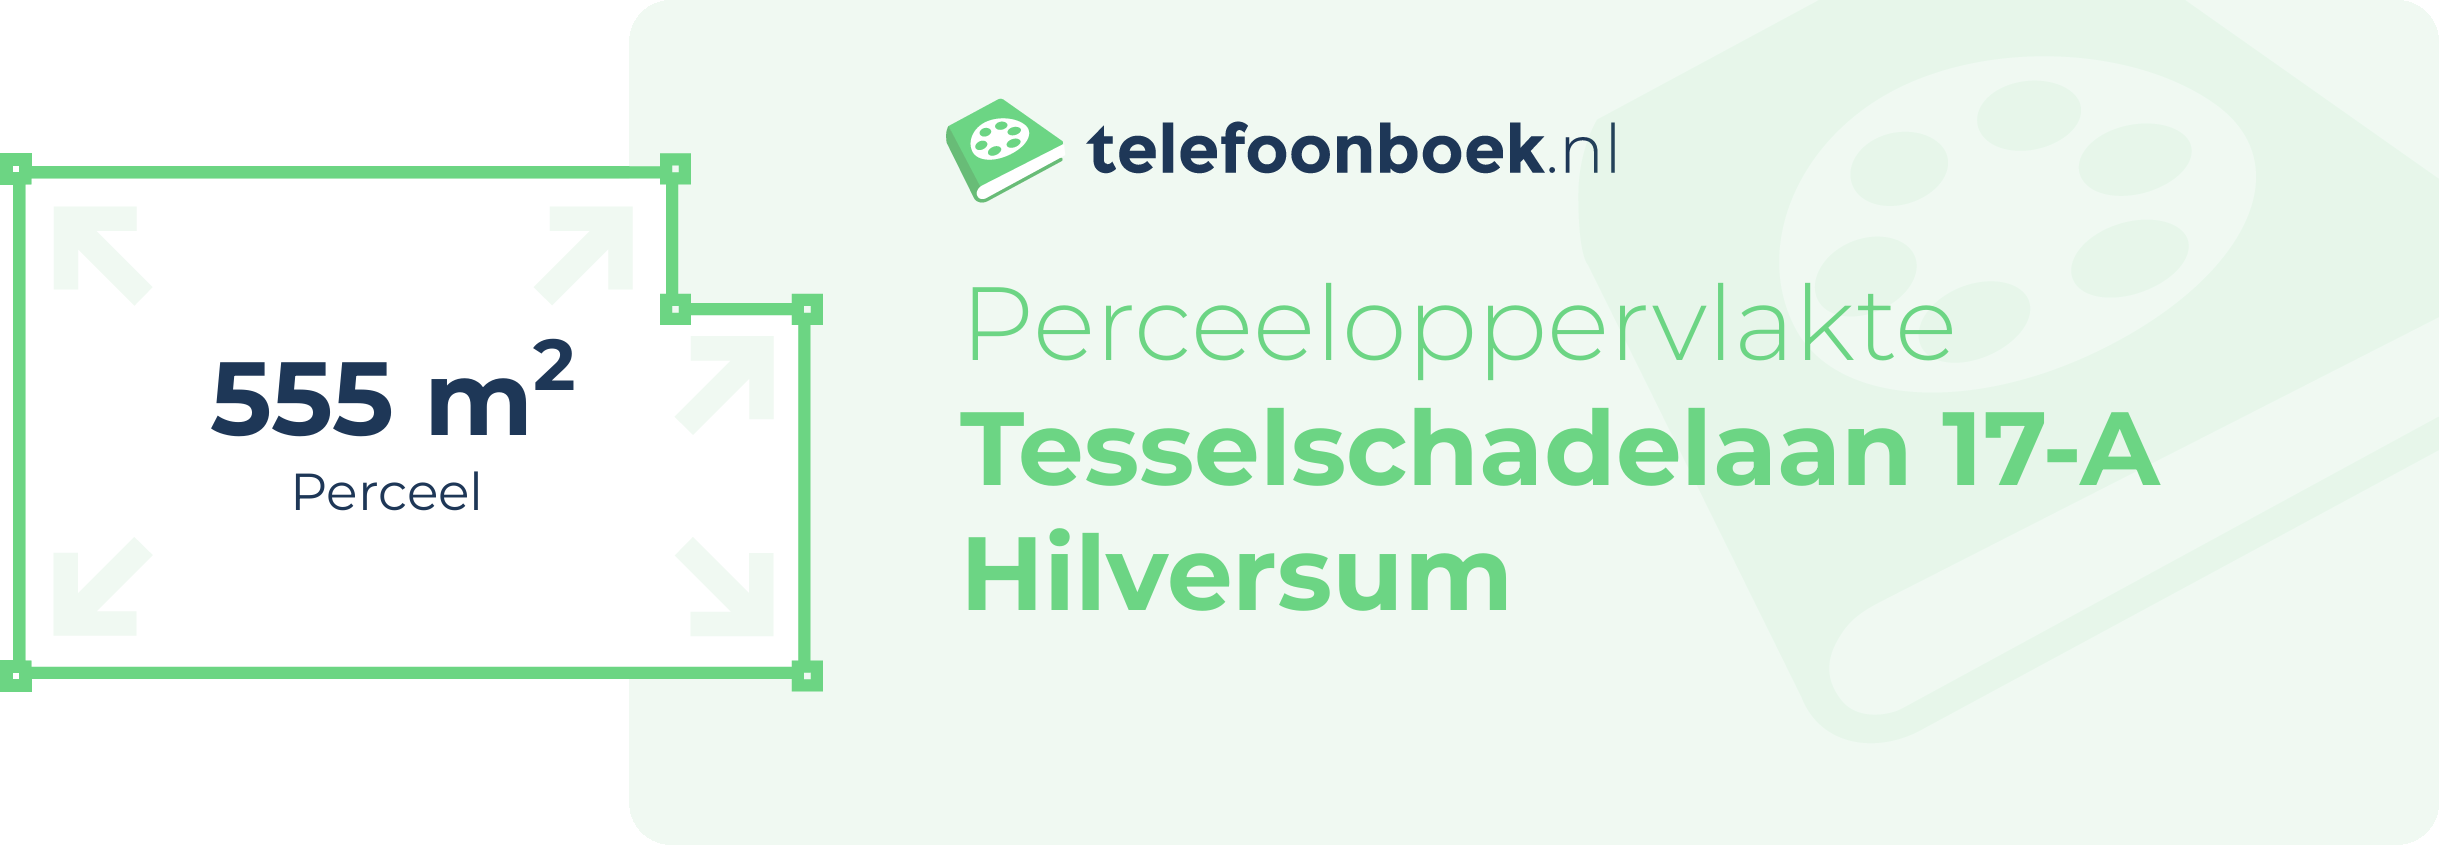 Perceeloppervlakte Tesselschadelaan 17-A Hilversum